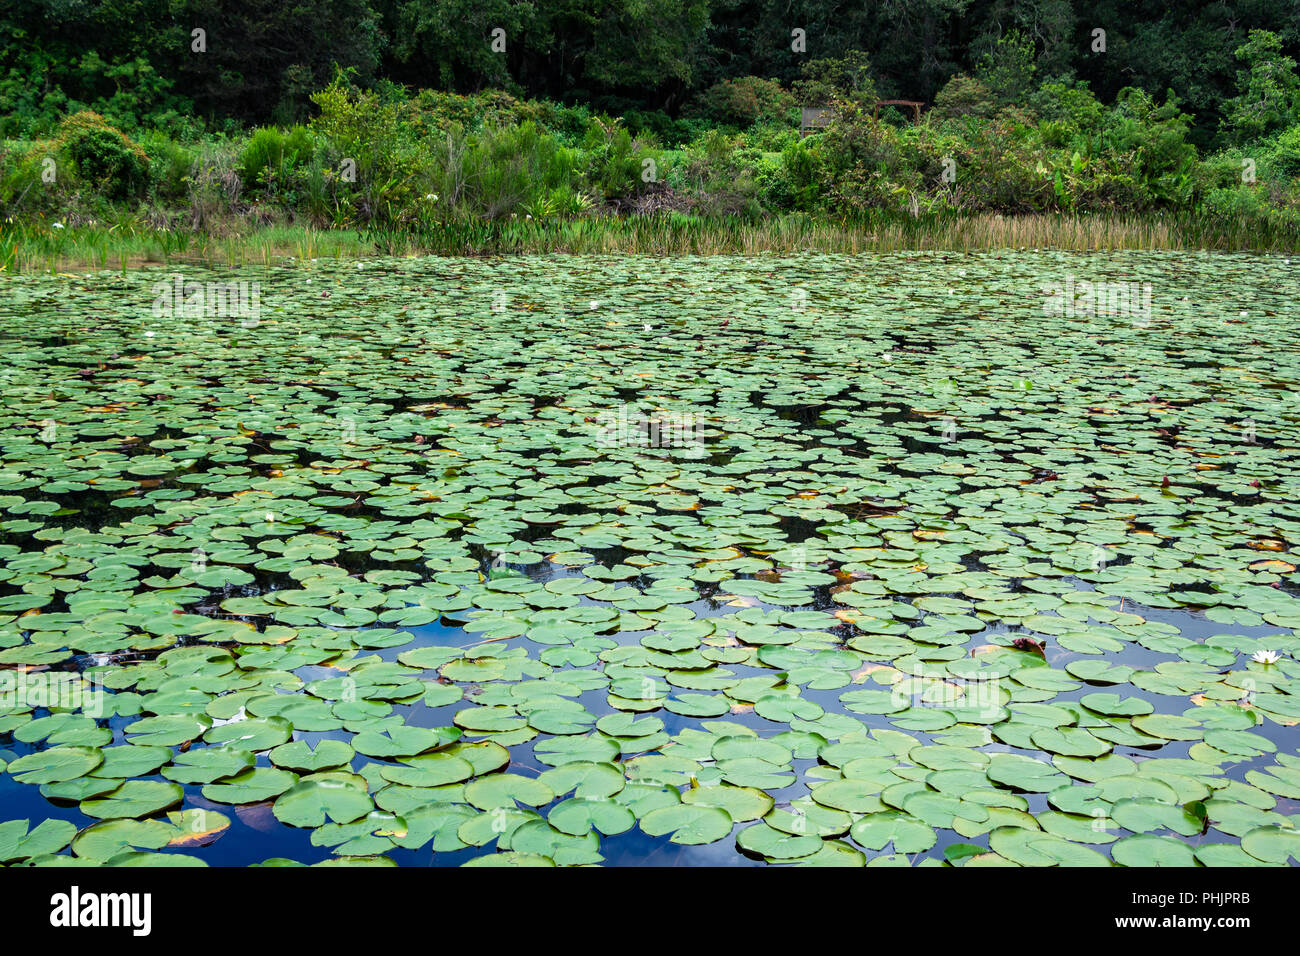 Il lago di coperta in acqua americana Lily Pad (Nymphaea odorata) - lunga chiave Area Naturale, Davie, Florida, Stati Uniti d'America Foto Stock